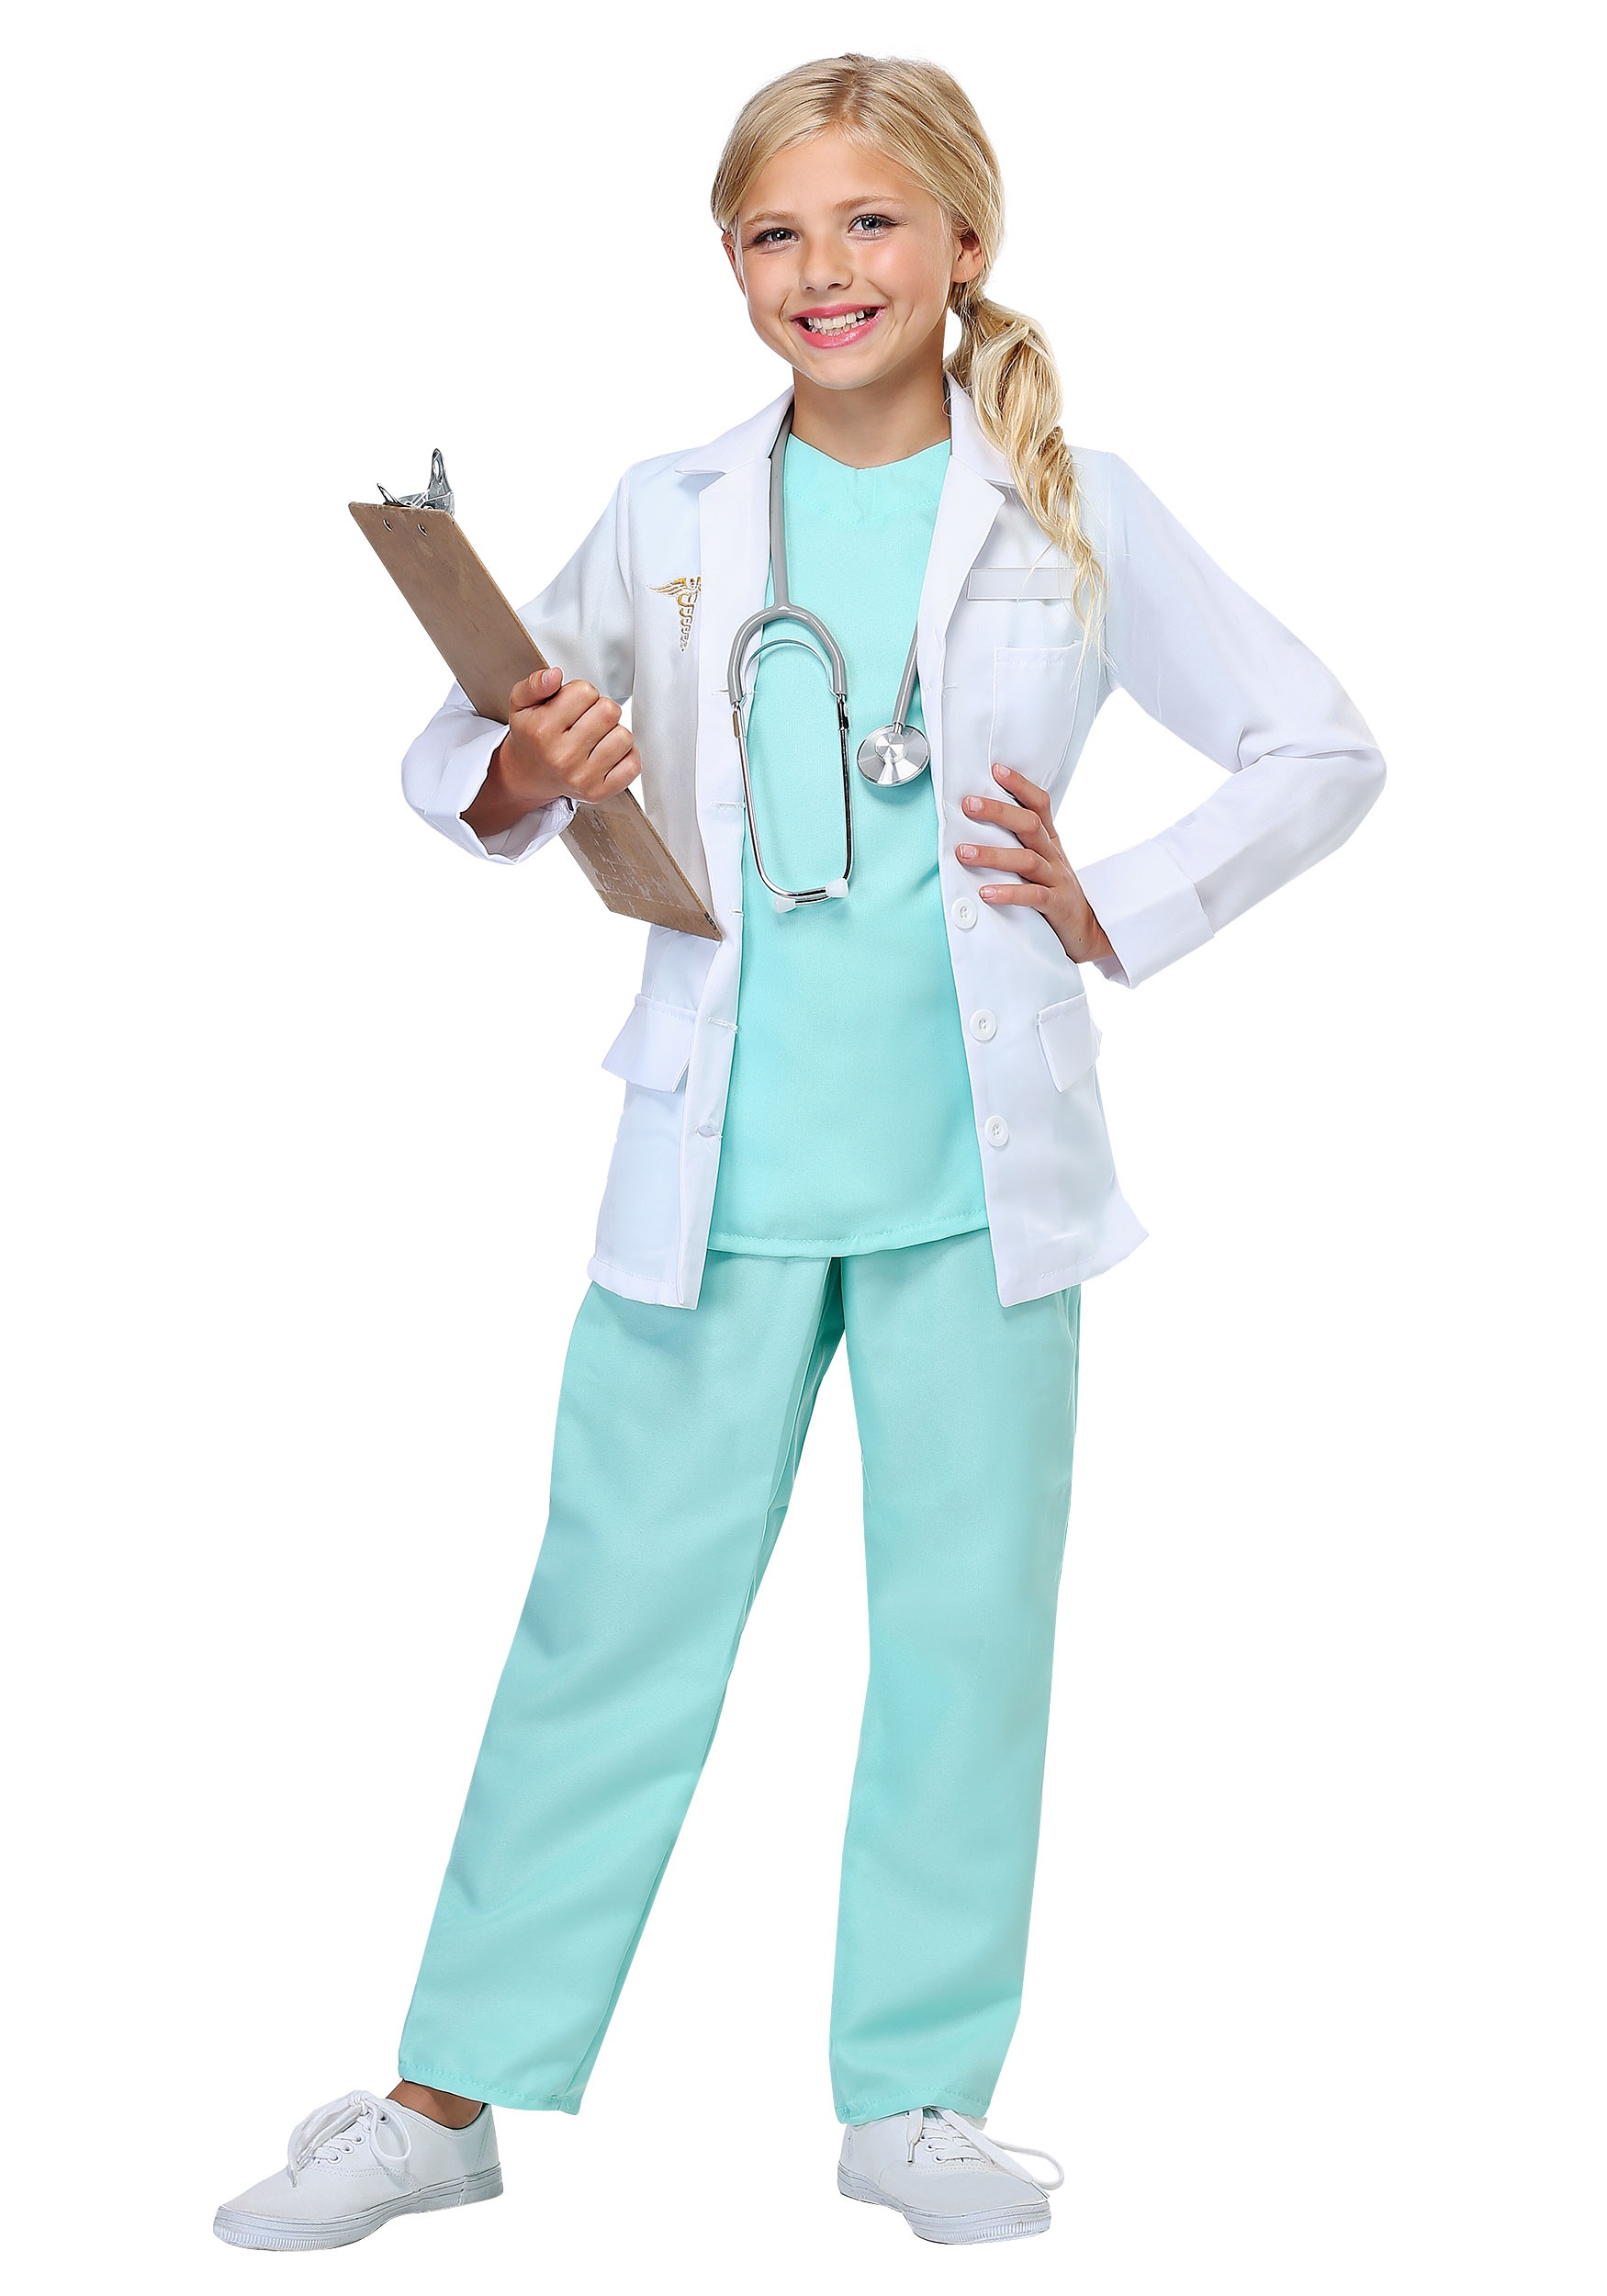 Kids Boys Girls Lab Coat Costume Doctor Uniform Medical Hospital Fancy Dress Up 